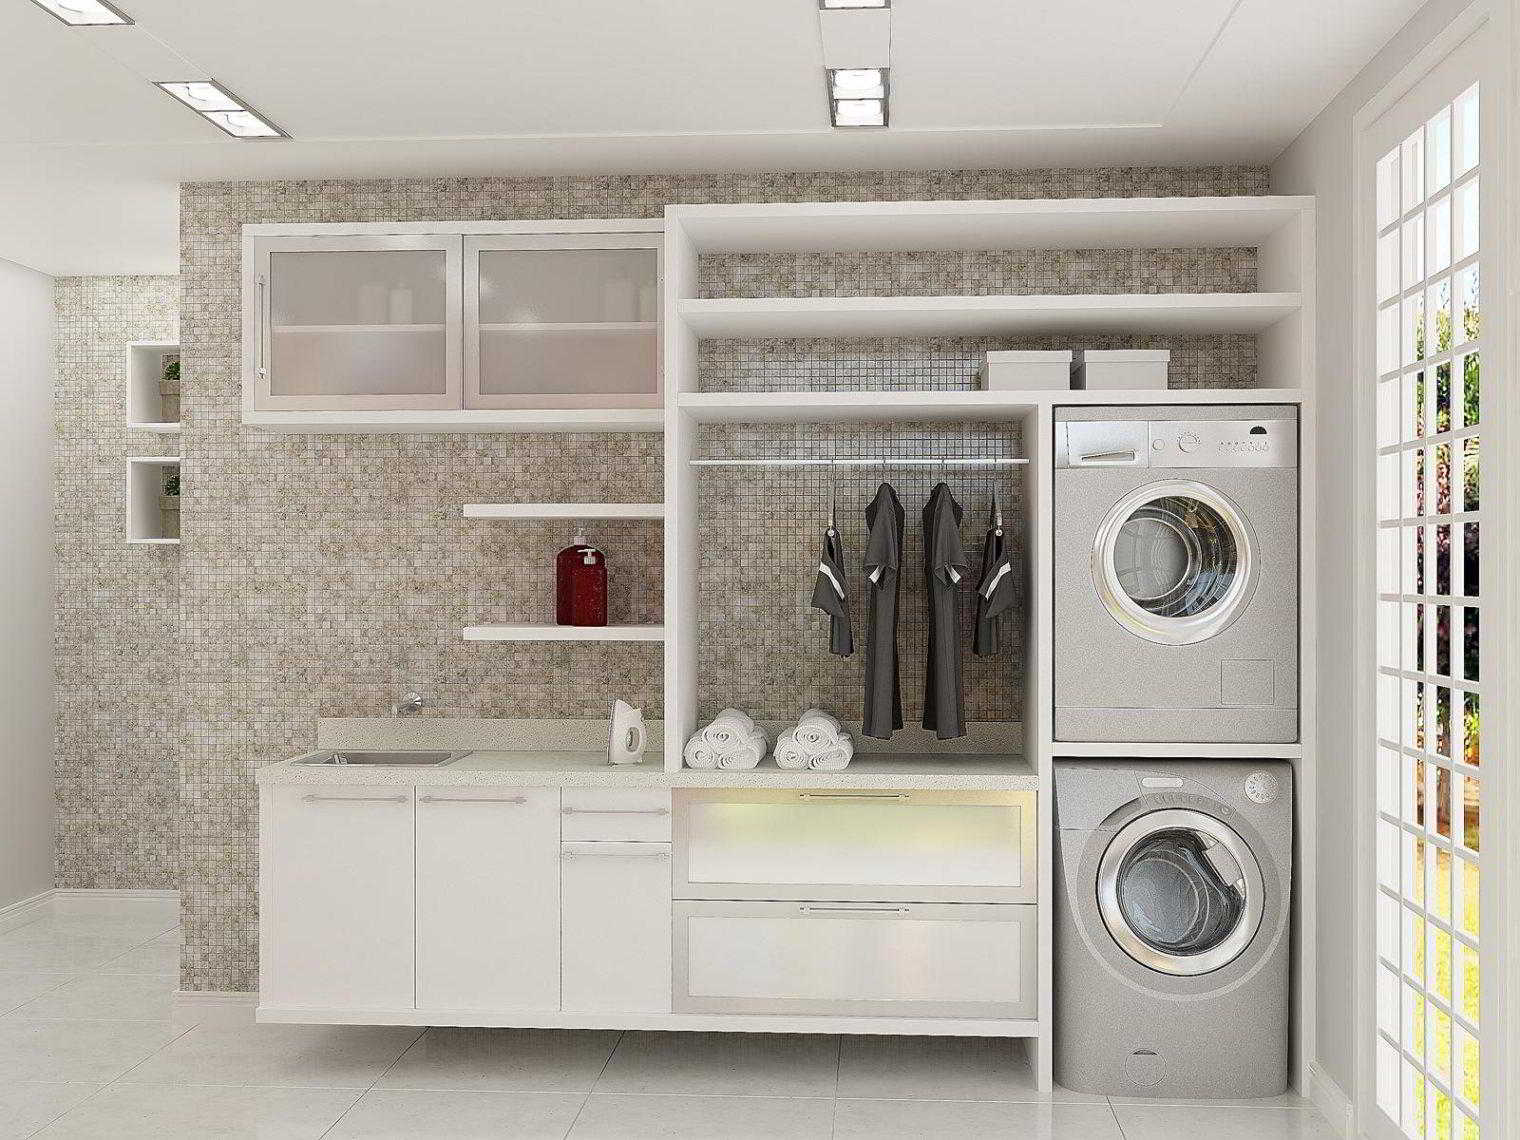 Desain Ruang Cuci Pakaian Dan Dapur Interior Rumah 3753